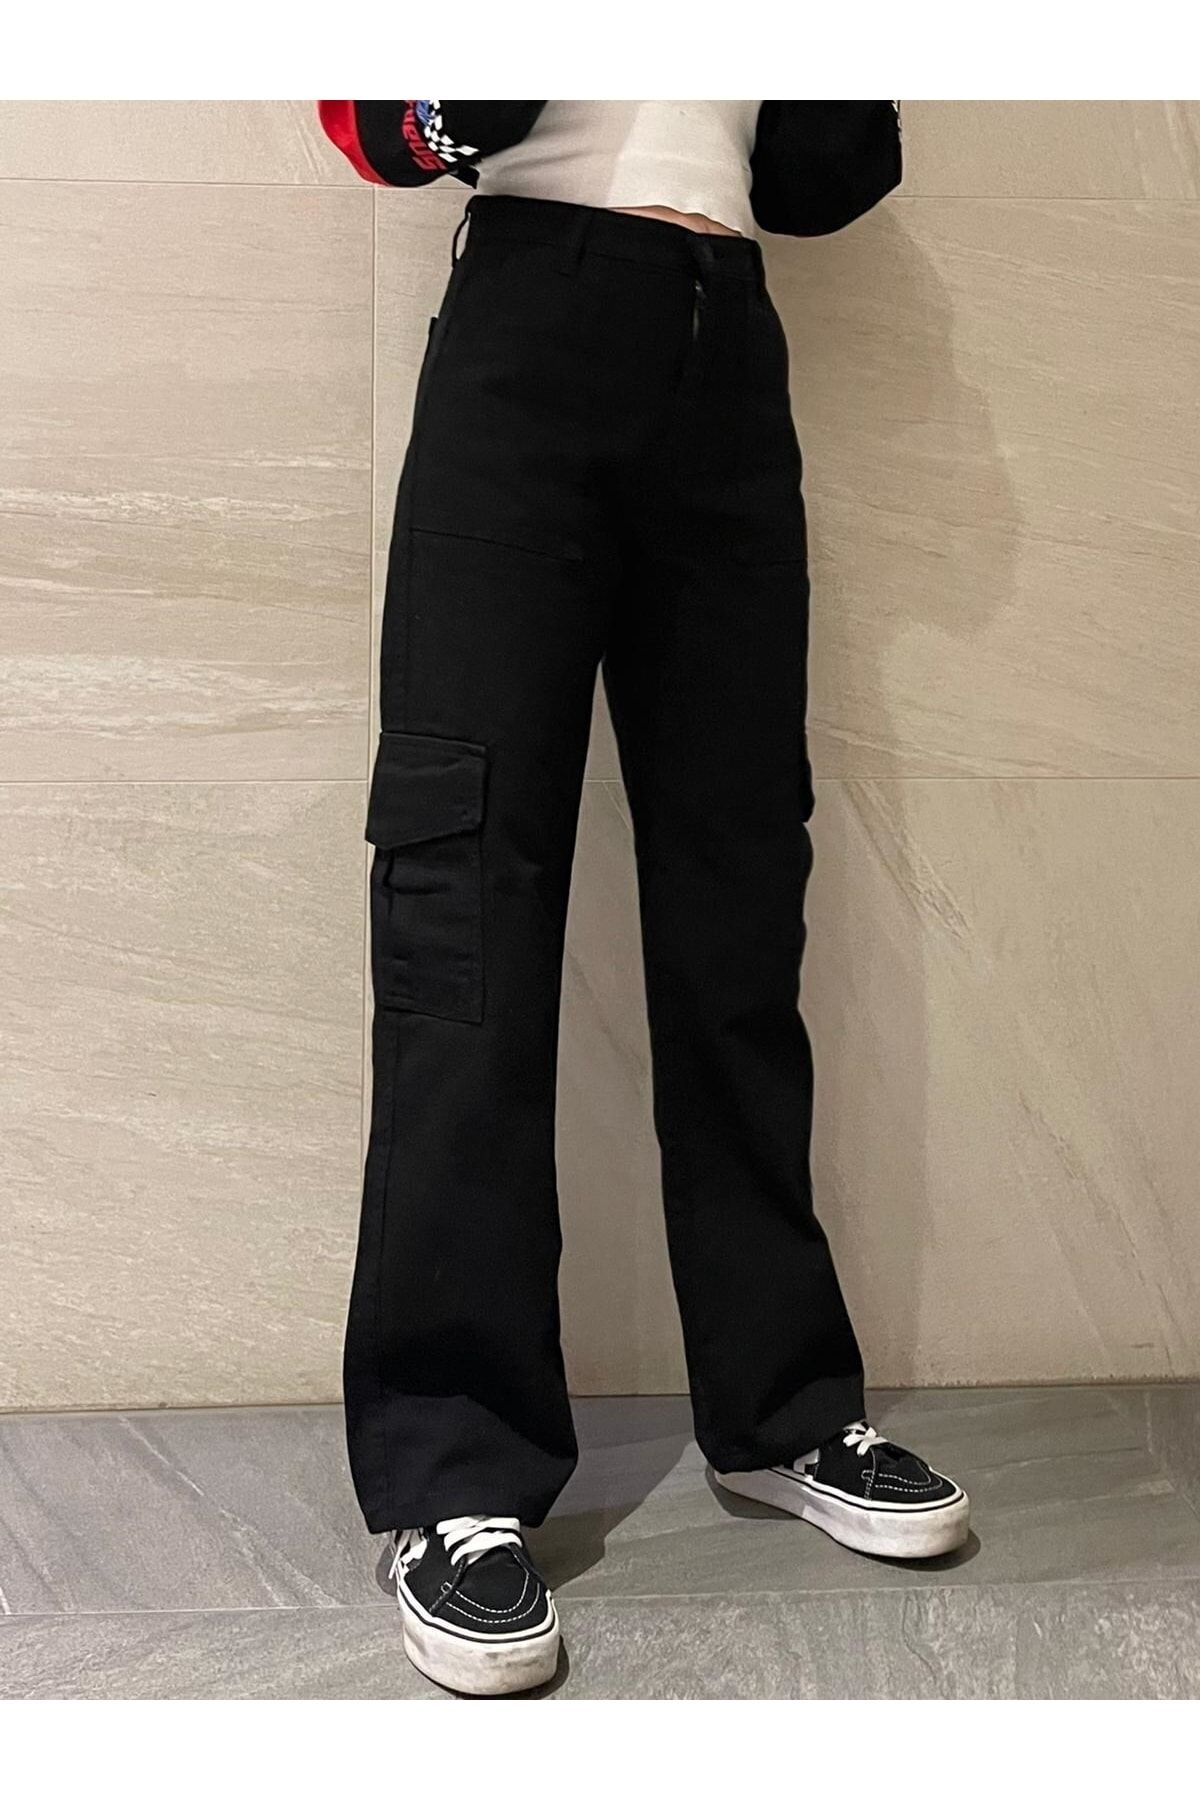 LİMABEL Yüksek Bel Siyah Avrupa Kargo Cepli Jeans  Pamuk